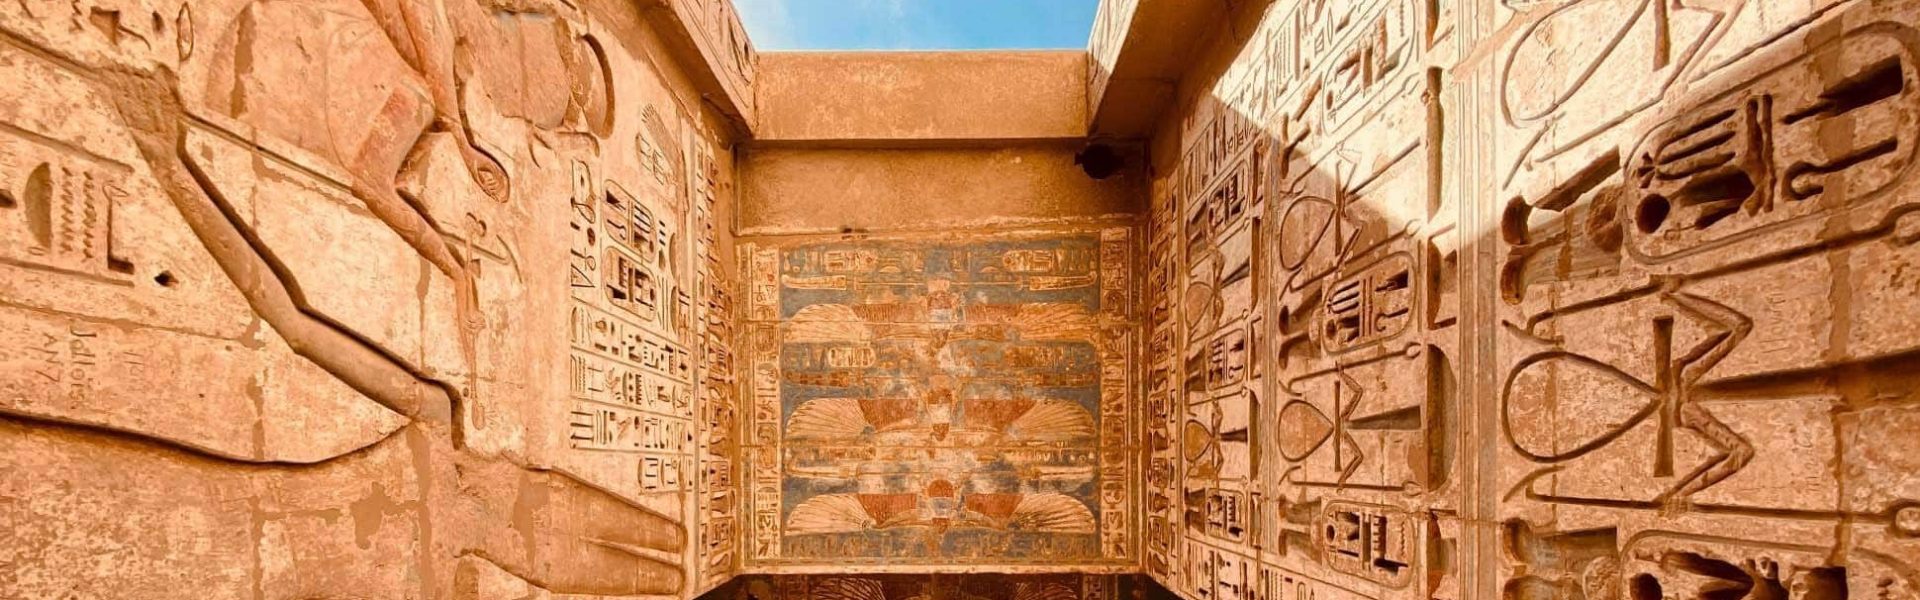 Detalle de pinturas y bajorrelieves en Egipto